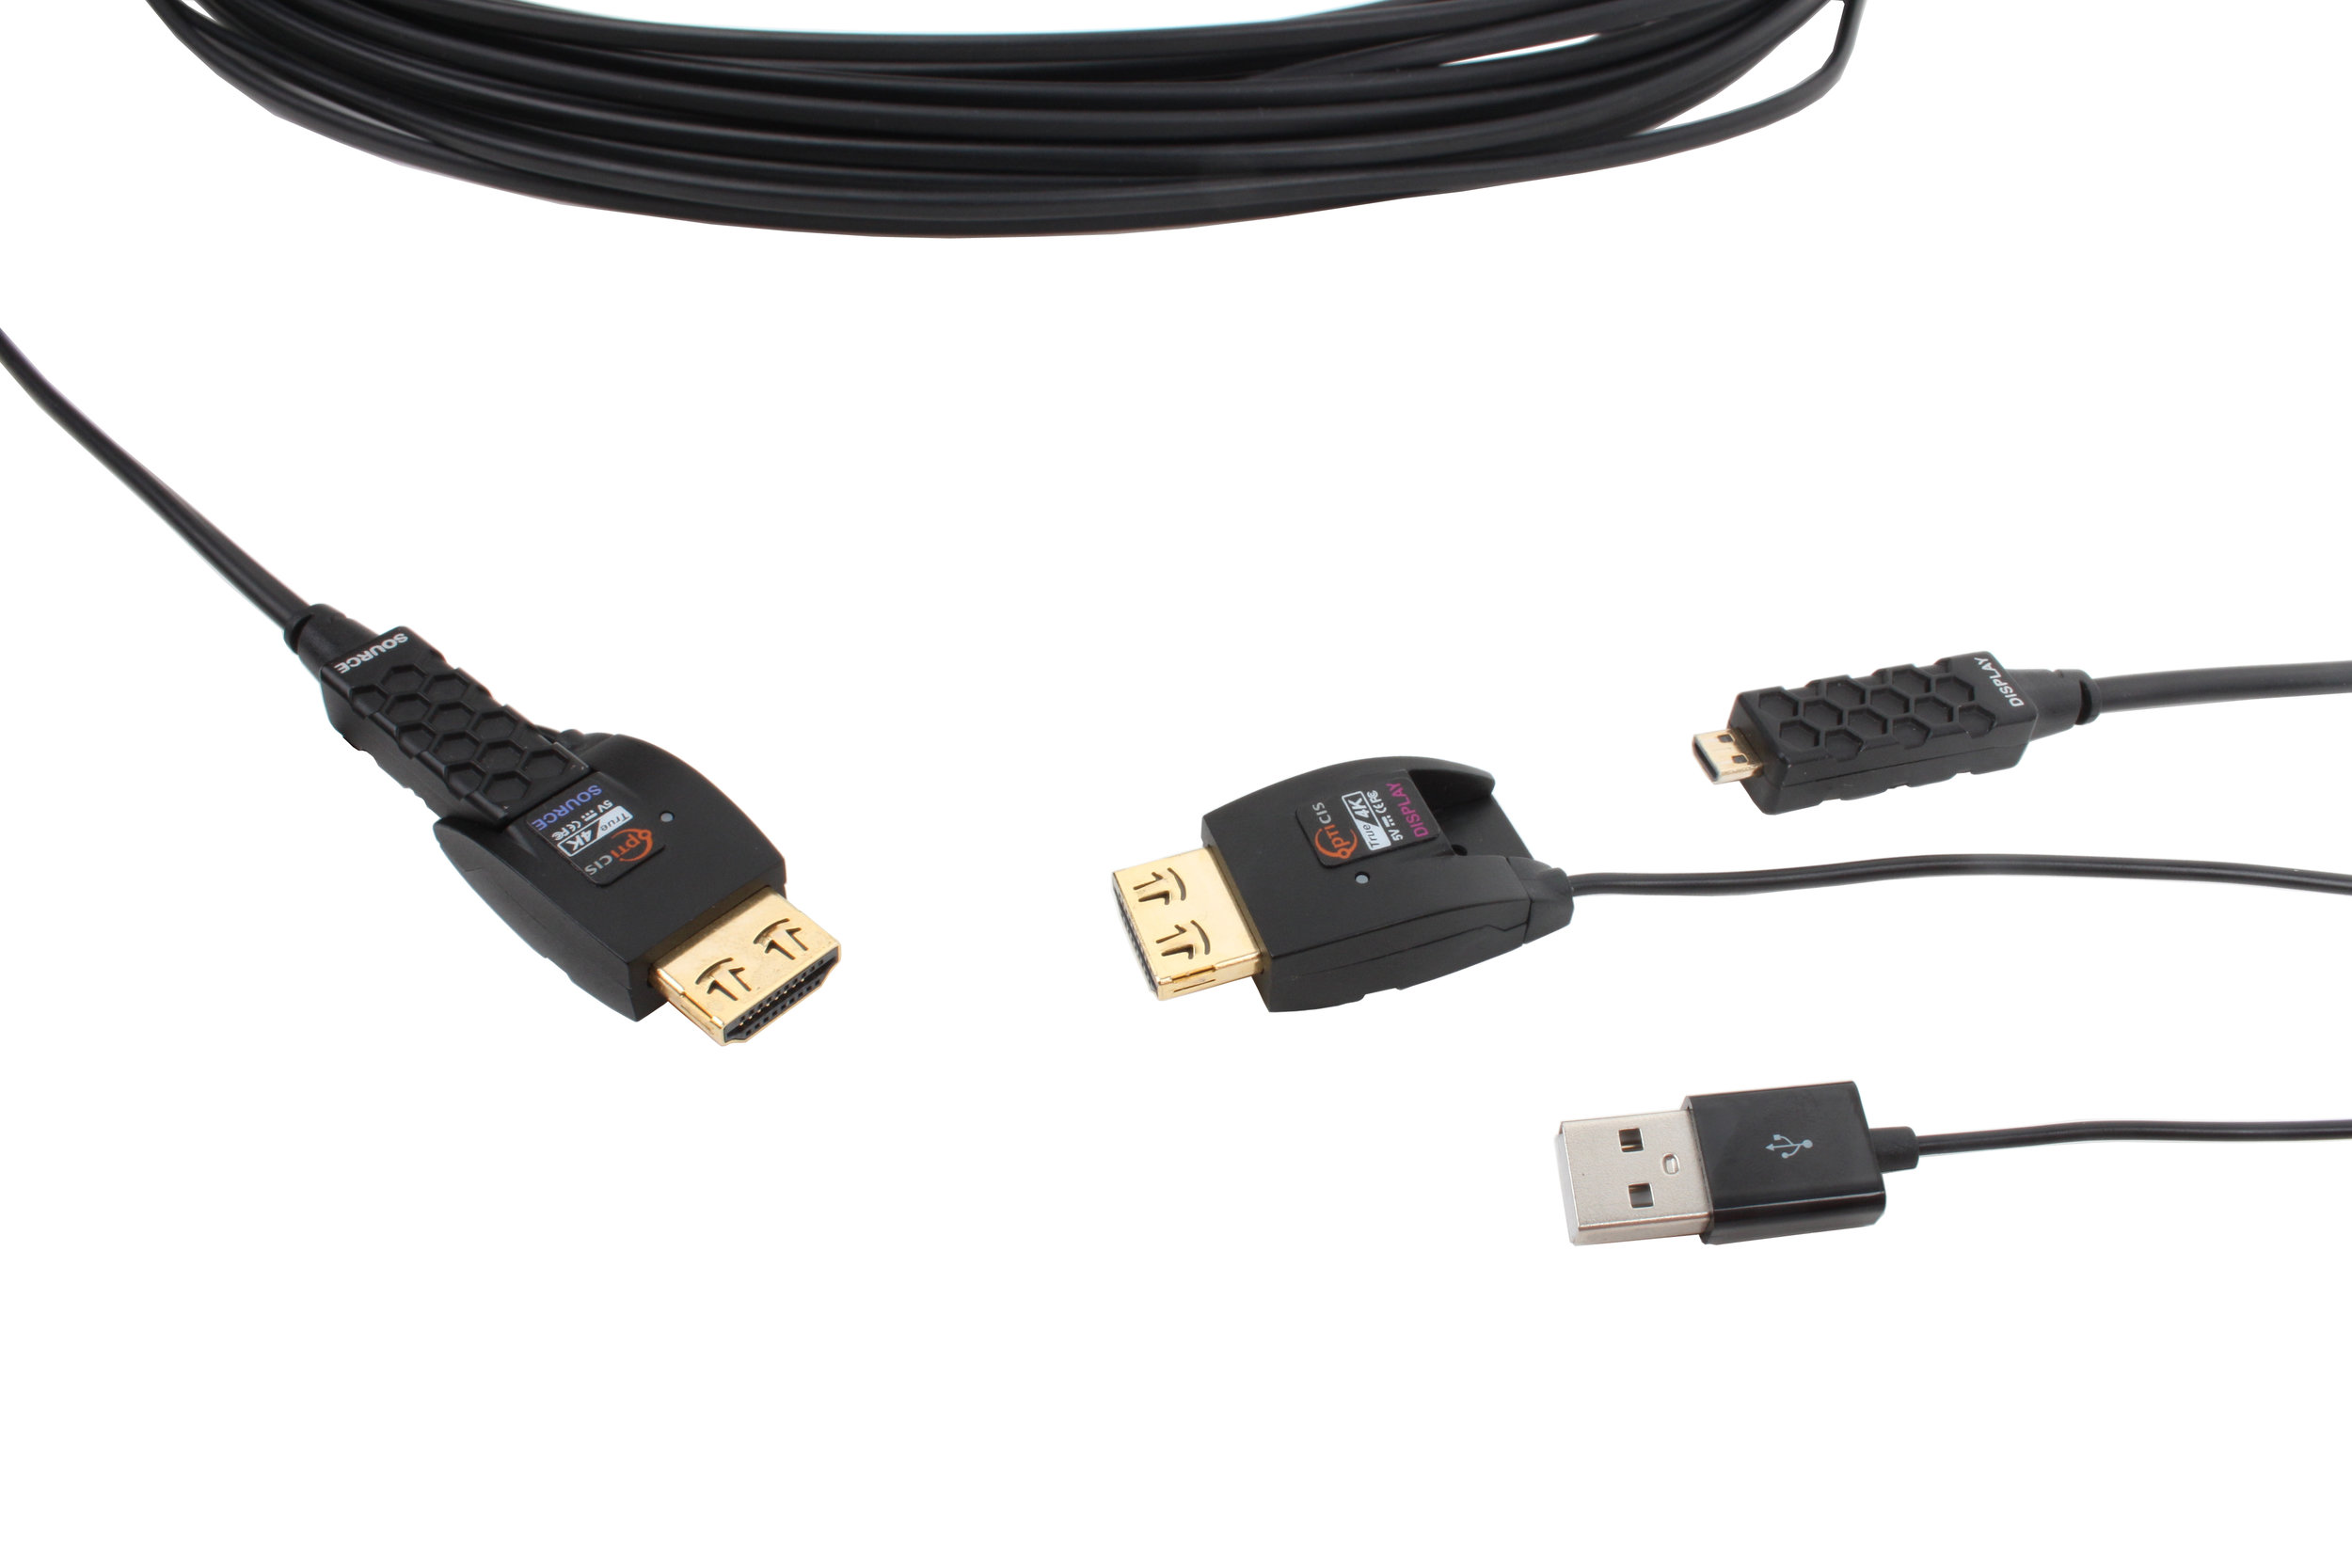 HDFC-200D; HDMI 2.0 Active Optical Cable with detachable connectors 4K@60hz 